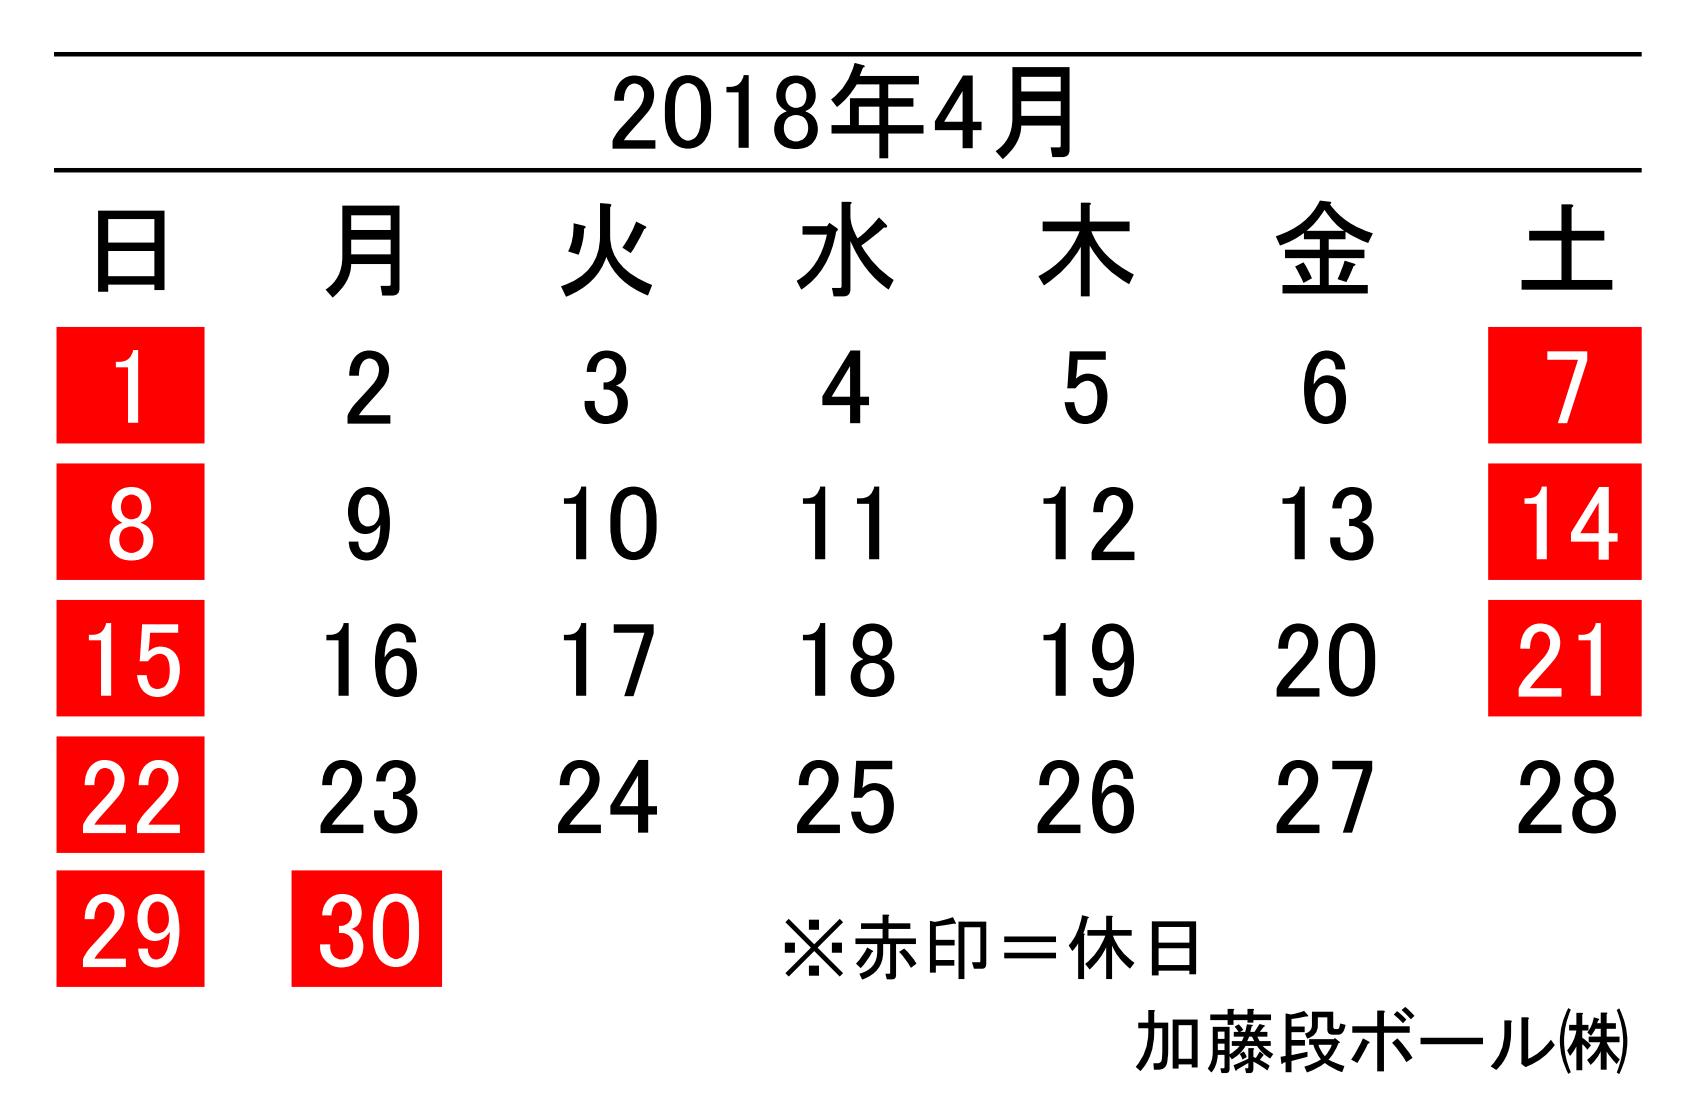 18年4月度営業日カレンダー 加藤段ボール株式会社 千葉 福島 神奈川を中心に段ボール製品 梱包資材の製造と販売